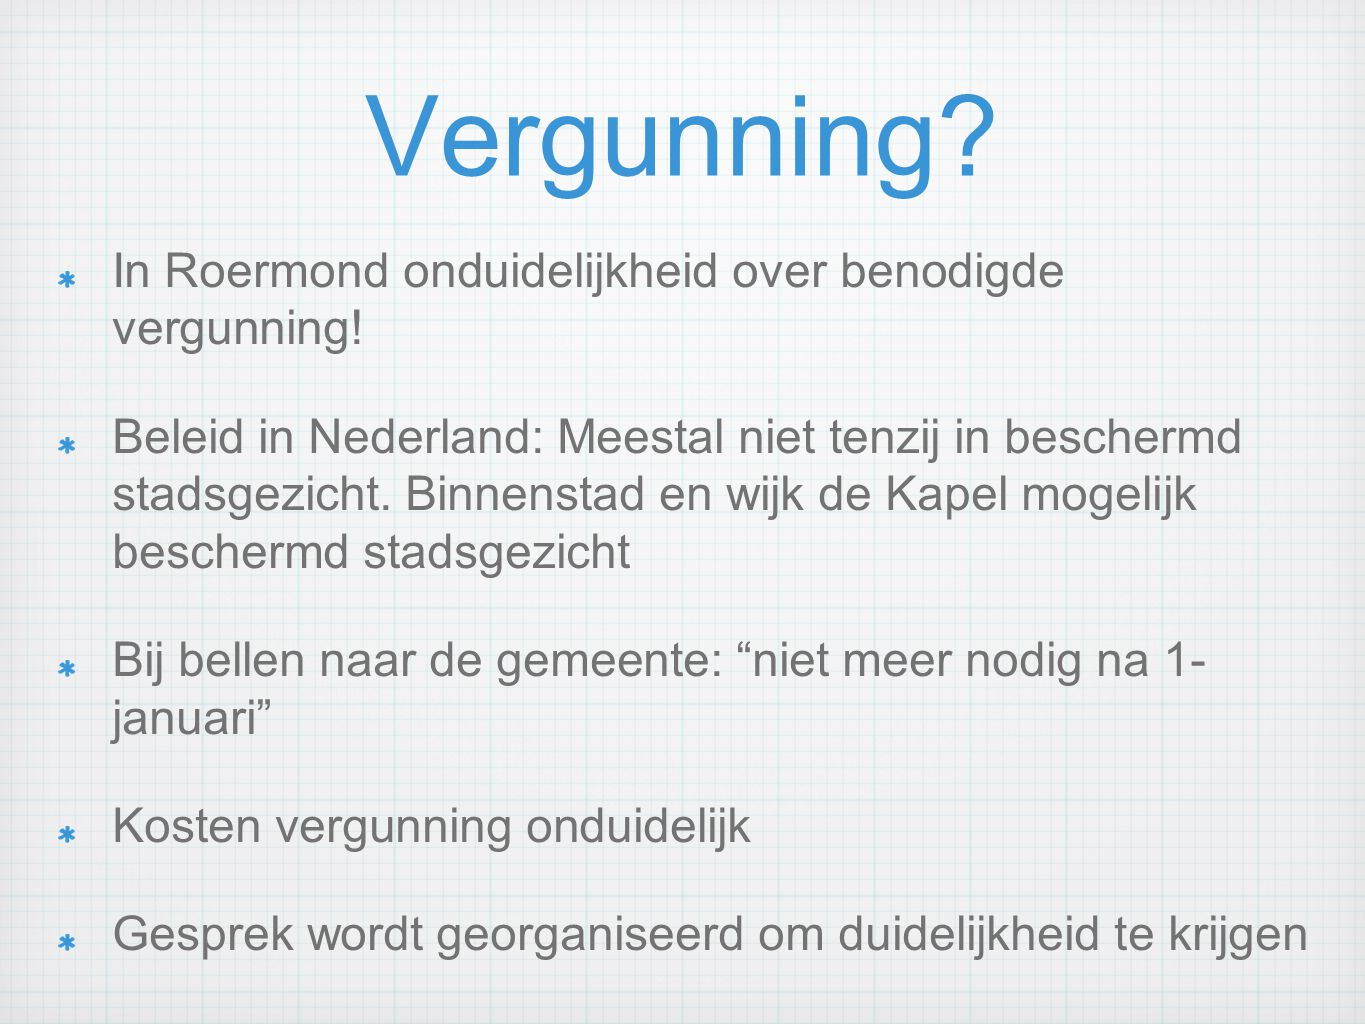 Vergunning. In Roermond onduidelijkheid over benodigde vergunning.